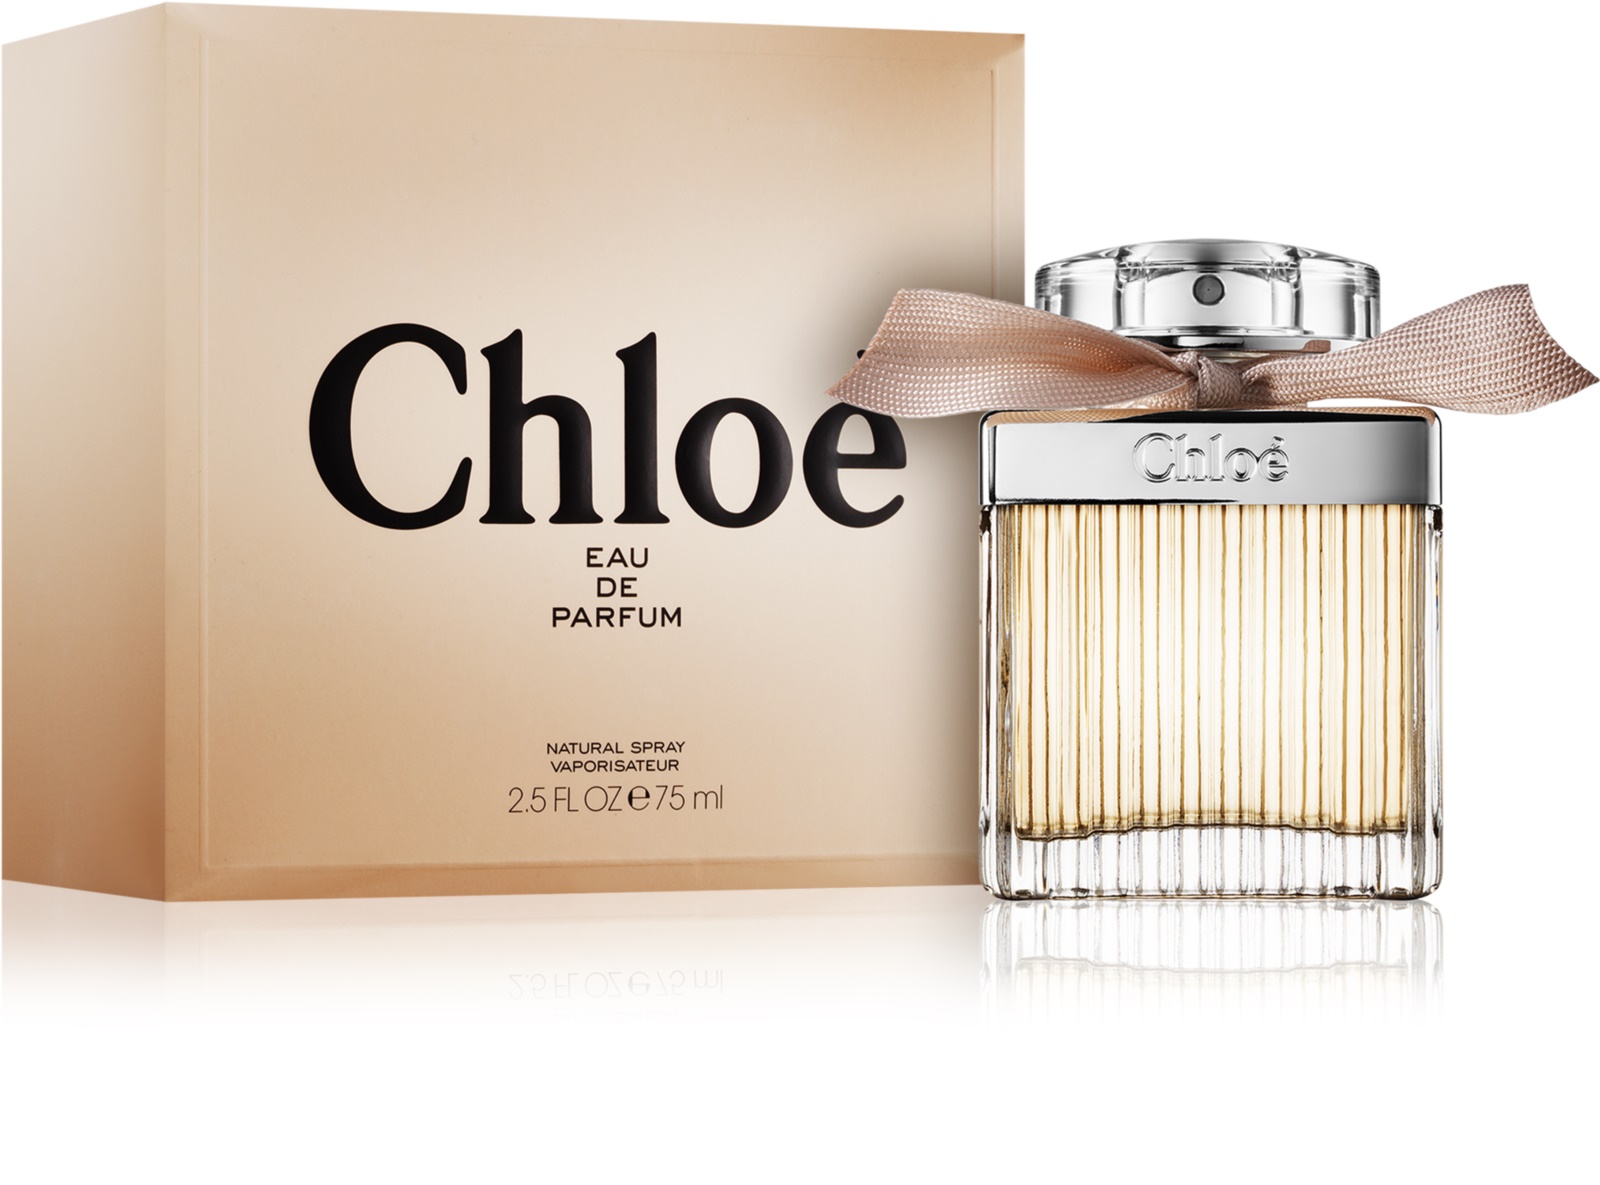 Chloe Chloe